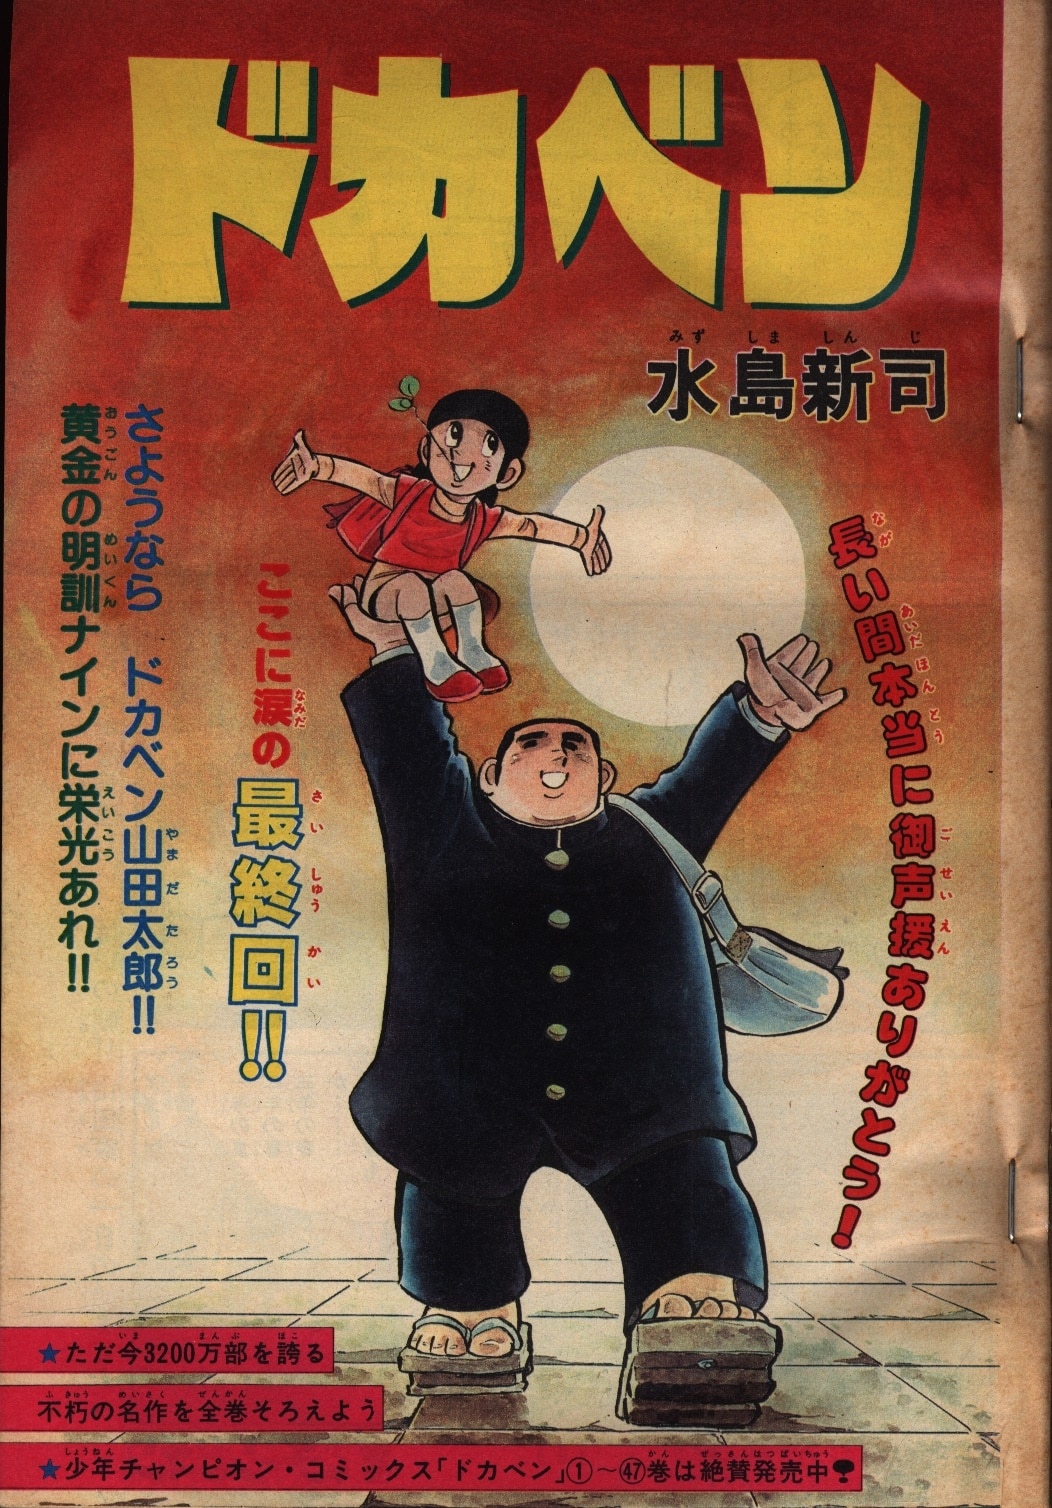 秋田書店 1981年(昭和56年)の漫画雑誌 週刊少年チャンピオン1981年 